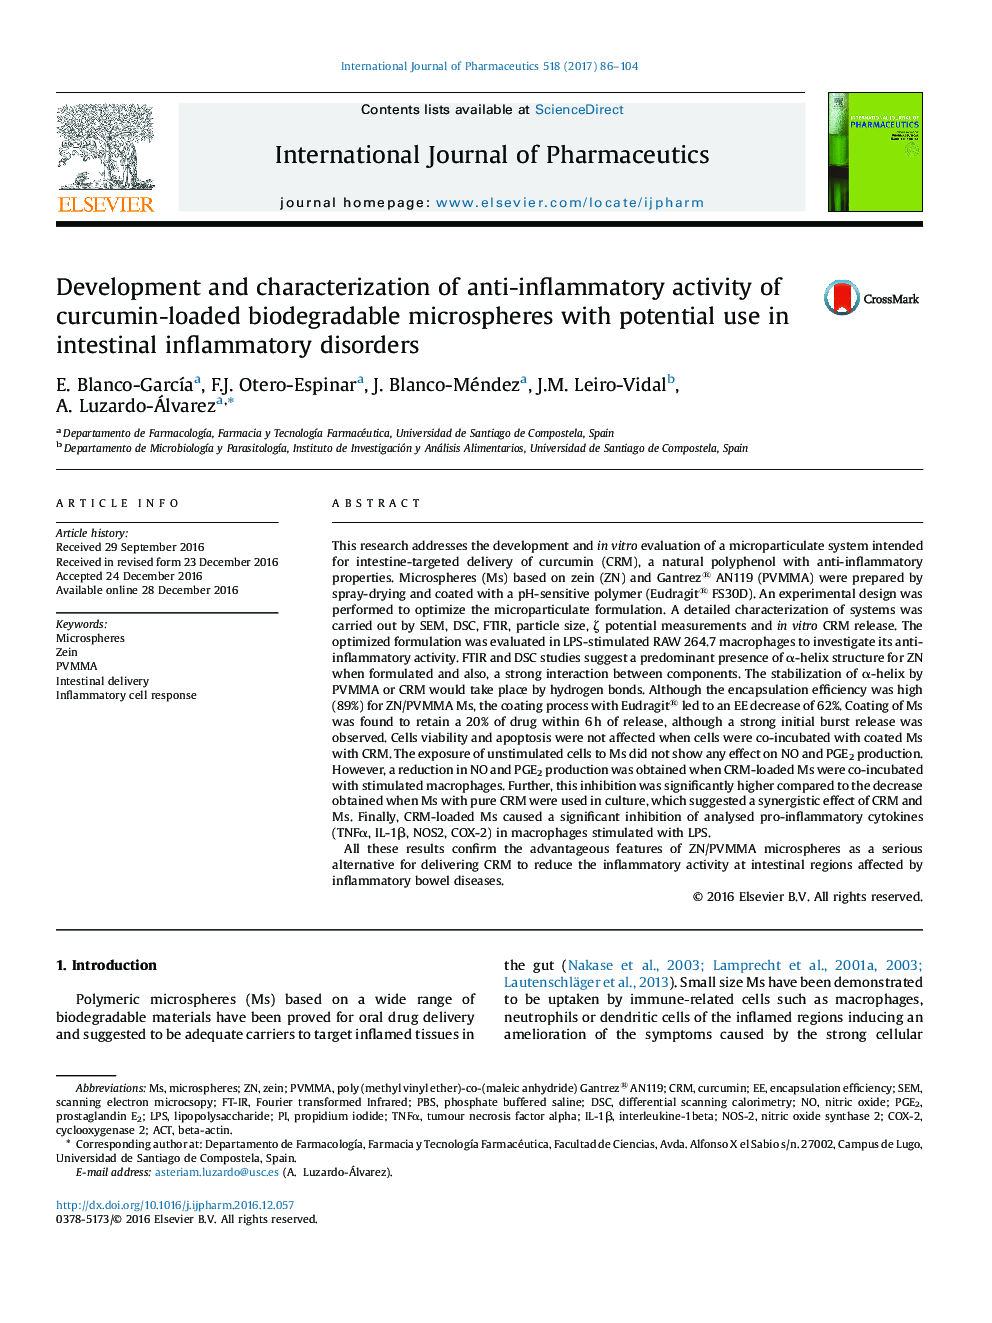 توسعه و مشخص کردن فعالیت ضد التهابی میکروسپرسهای زیست تخریب پذیر کورکومین با استفاده بالقوه در اختلالات التهابی روده 